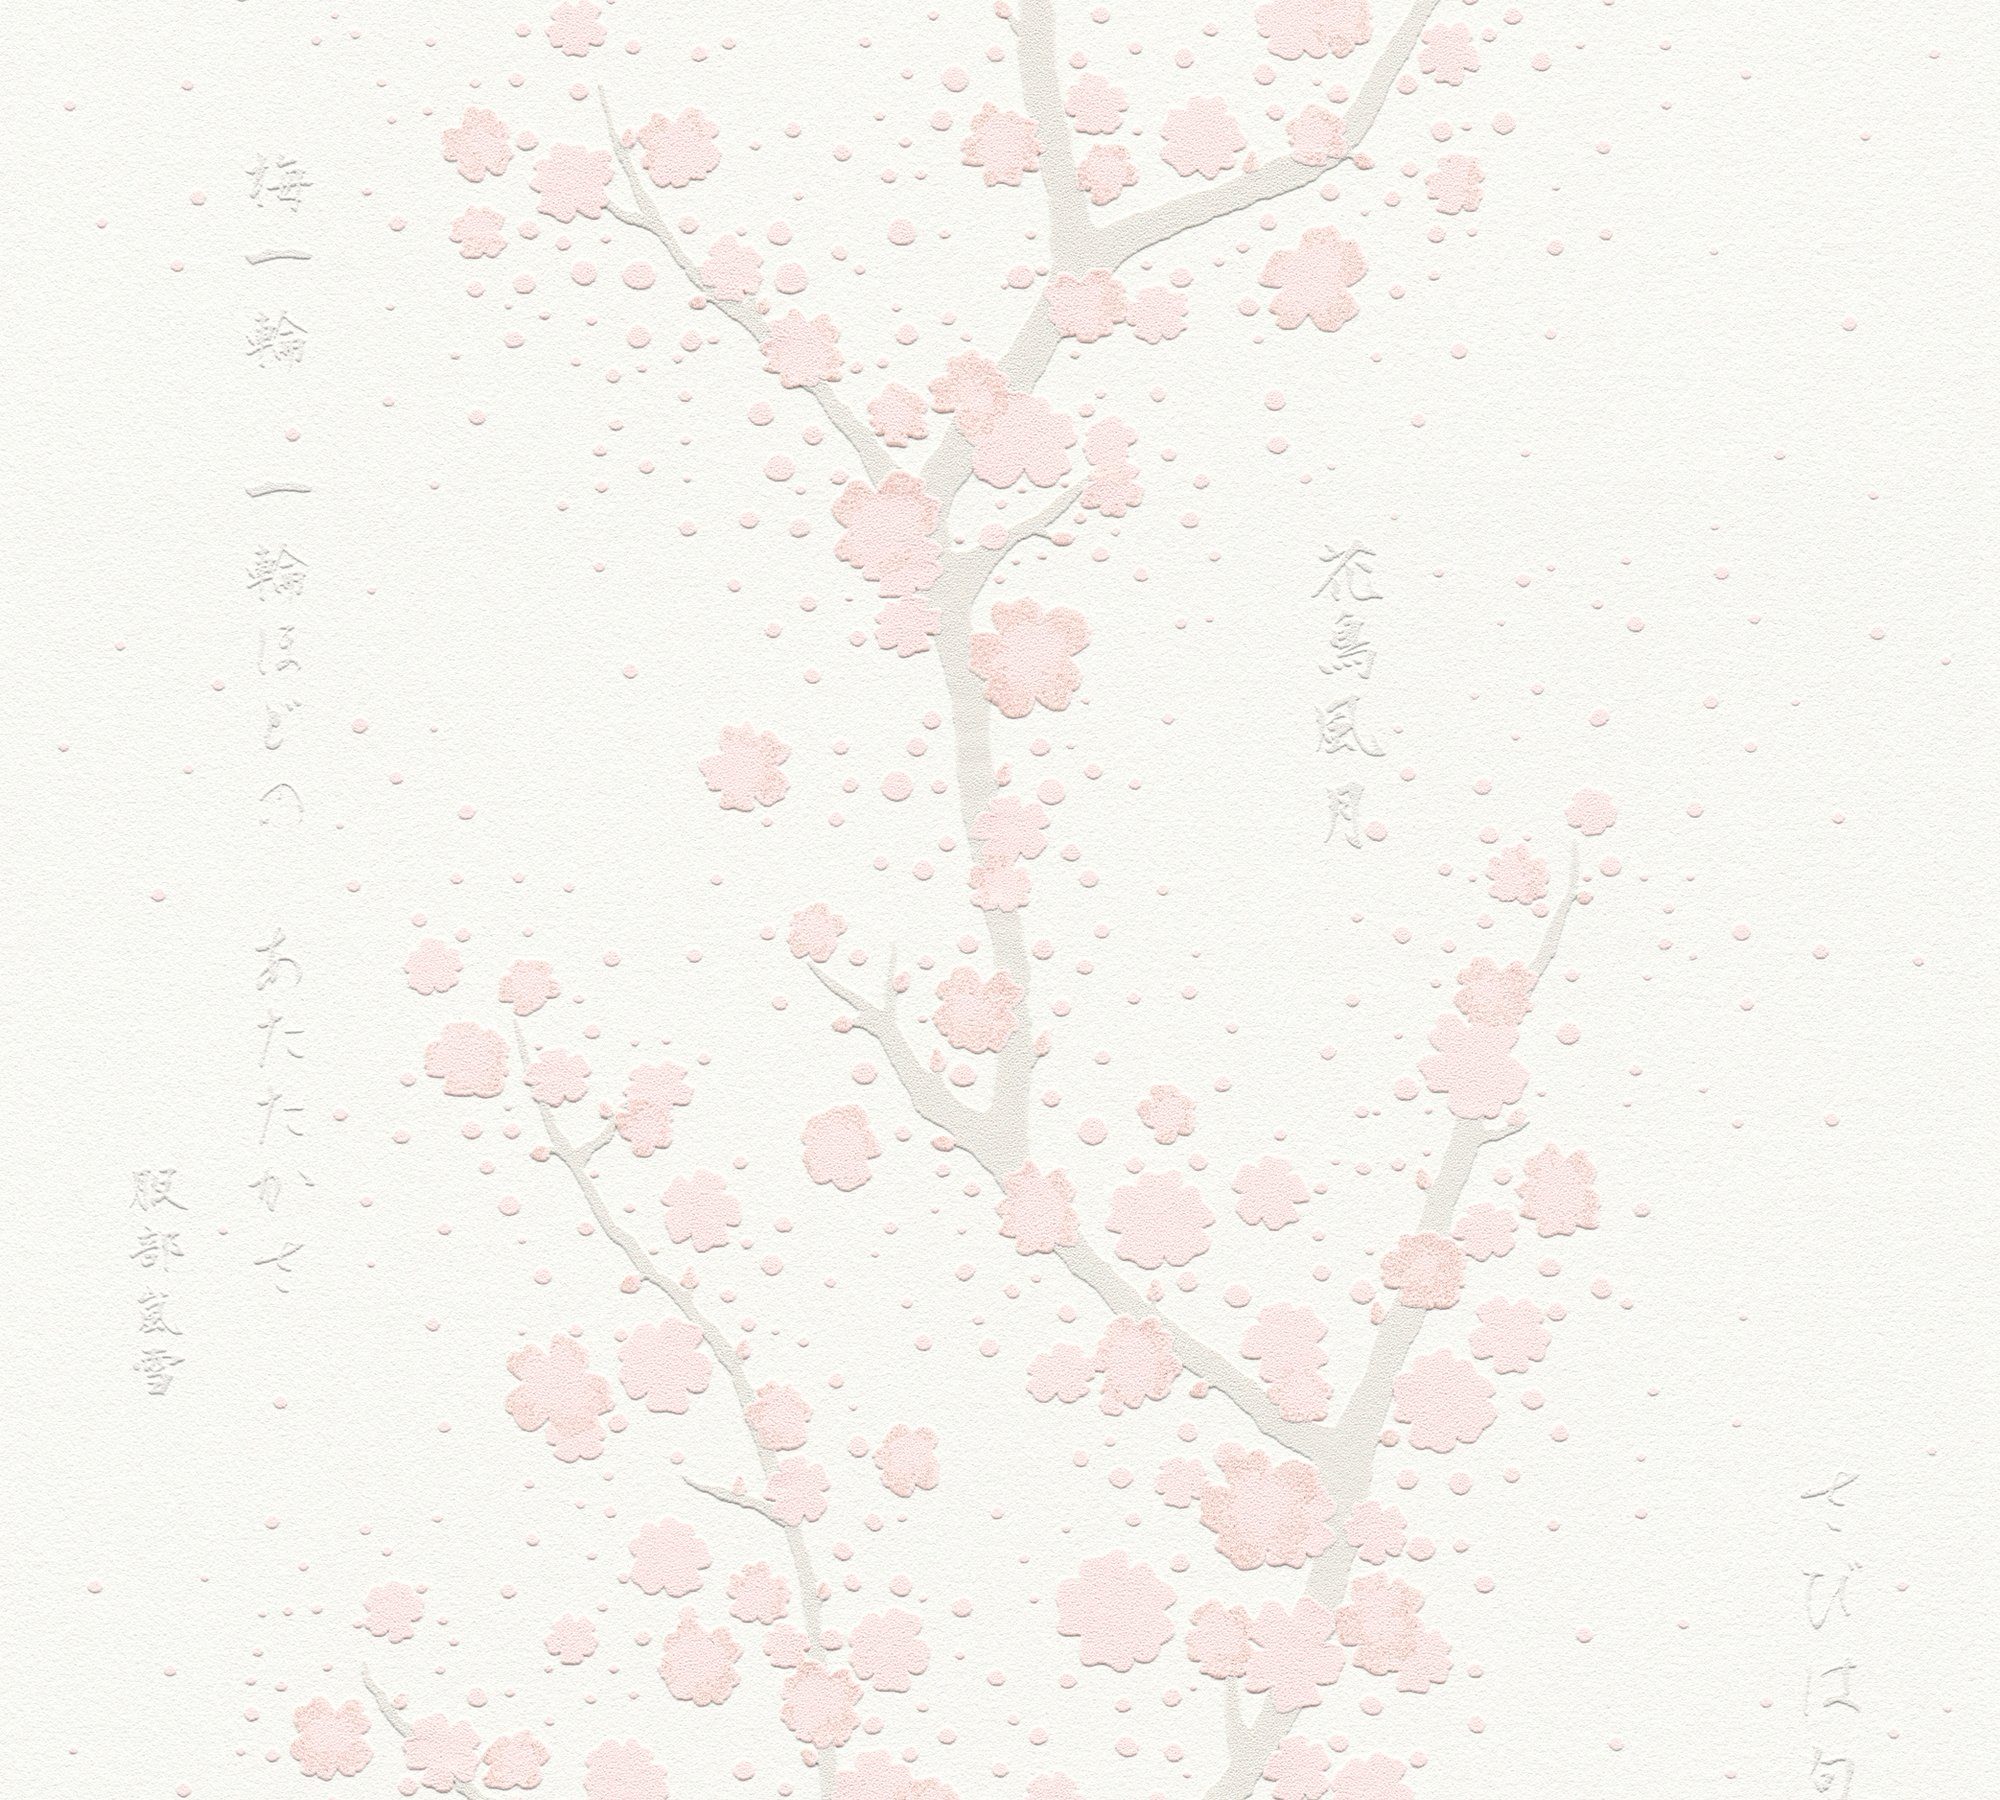 Schrift, Fusion, floral, Vliestapete Tapete Création A.S. Japanisch mit Asian Blumentapete asiatisch, aufgeschäumt, weiß/rosa/hellgrau